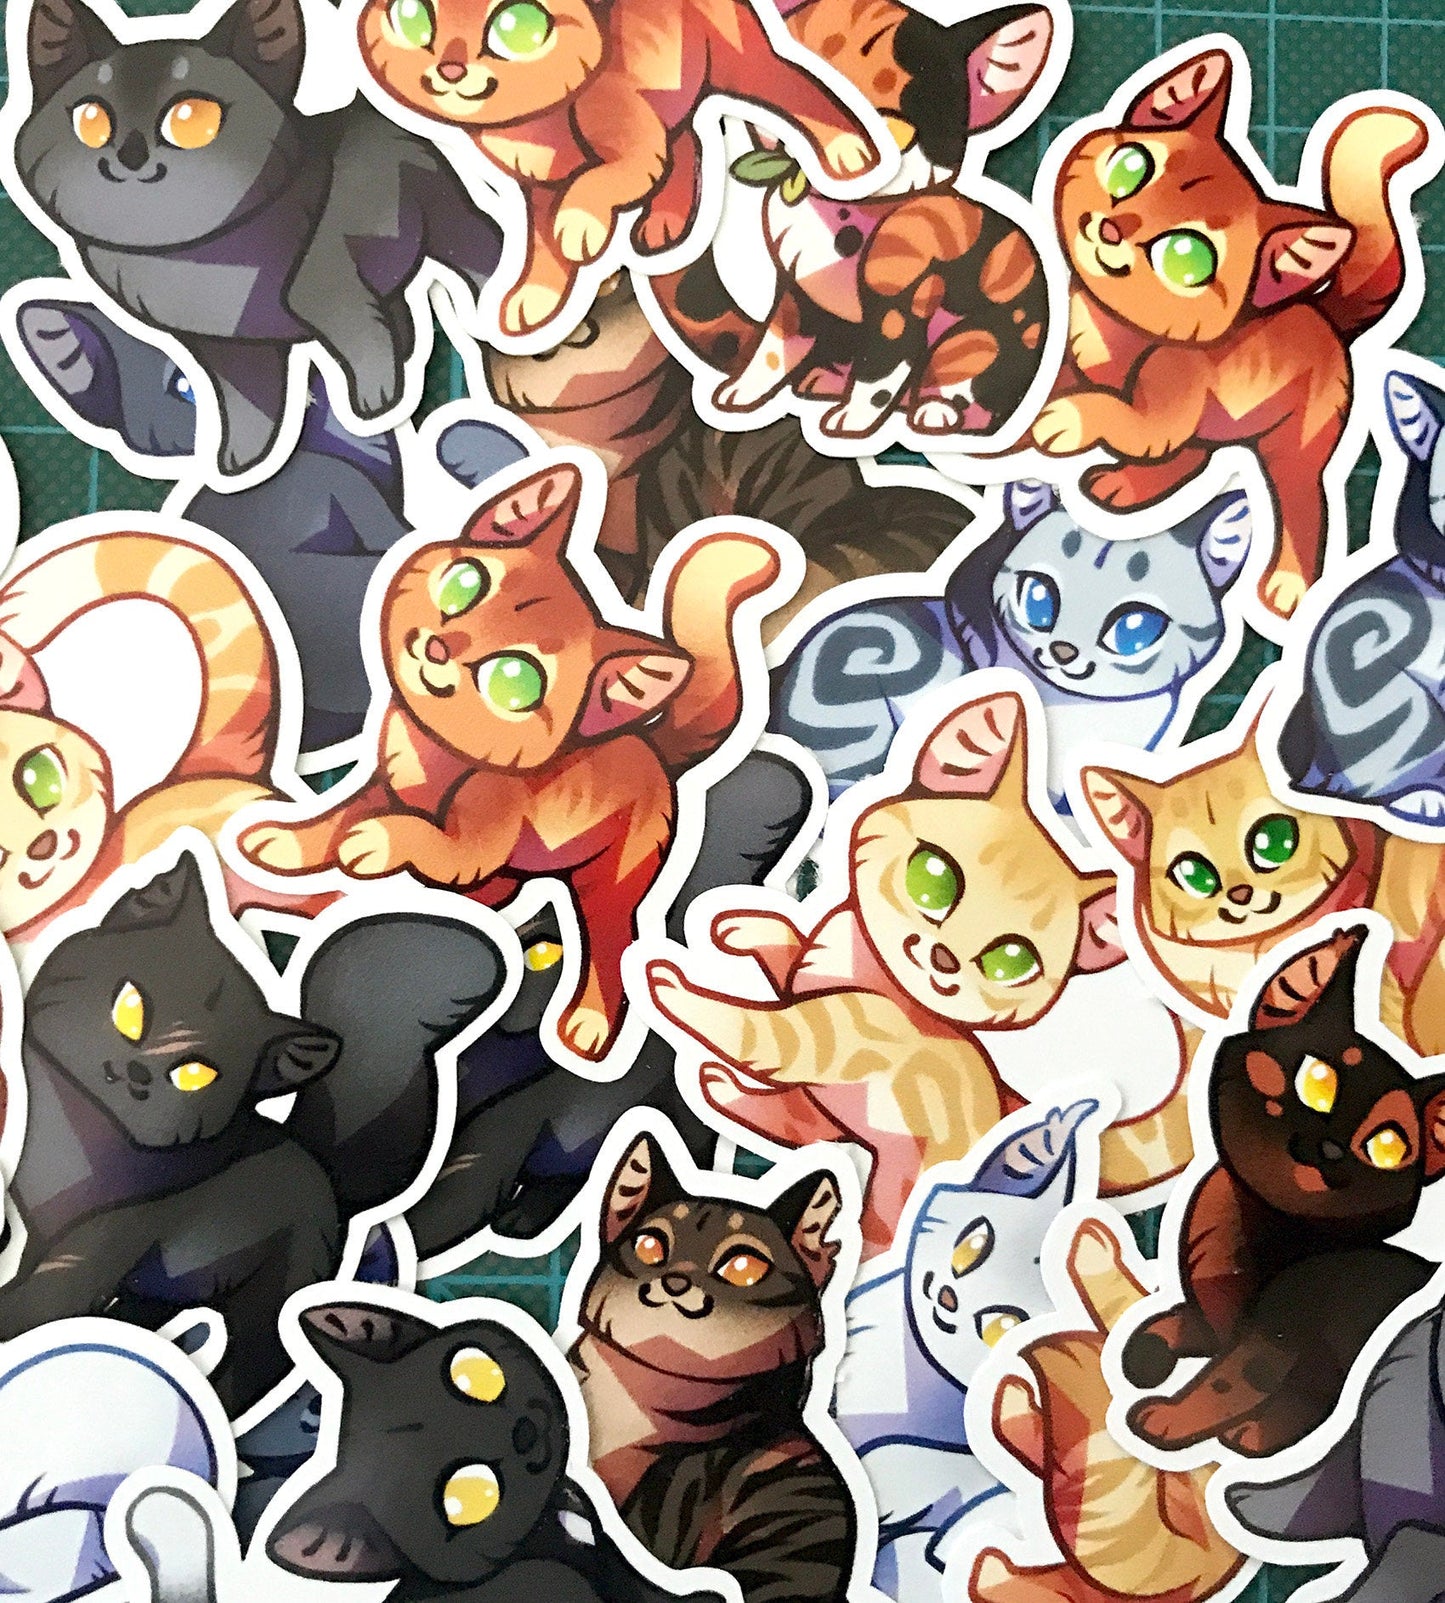 Cute Warrior Cats Sticker set